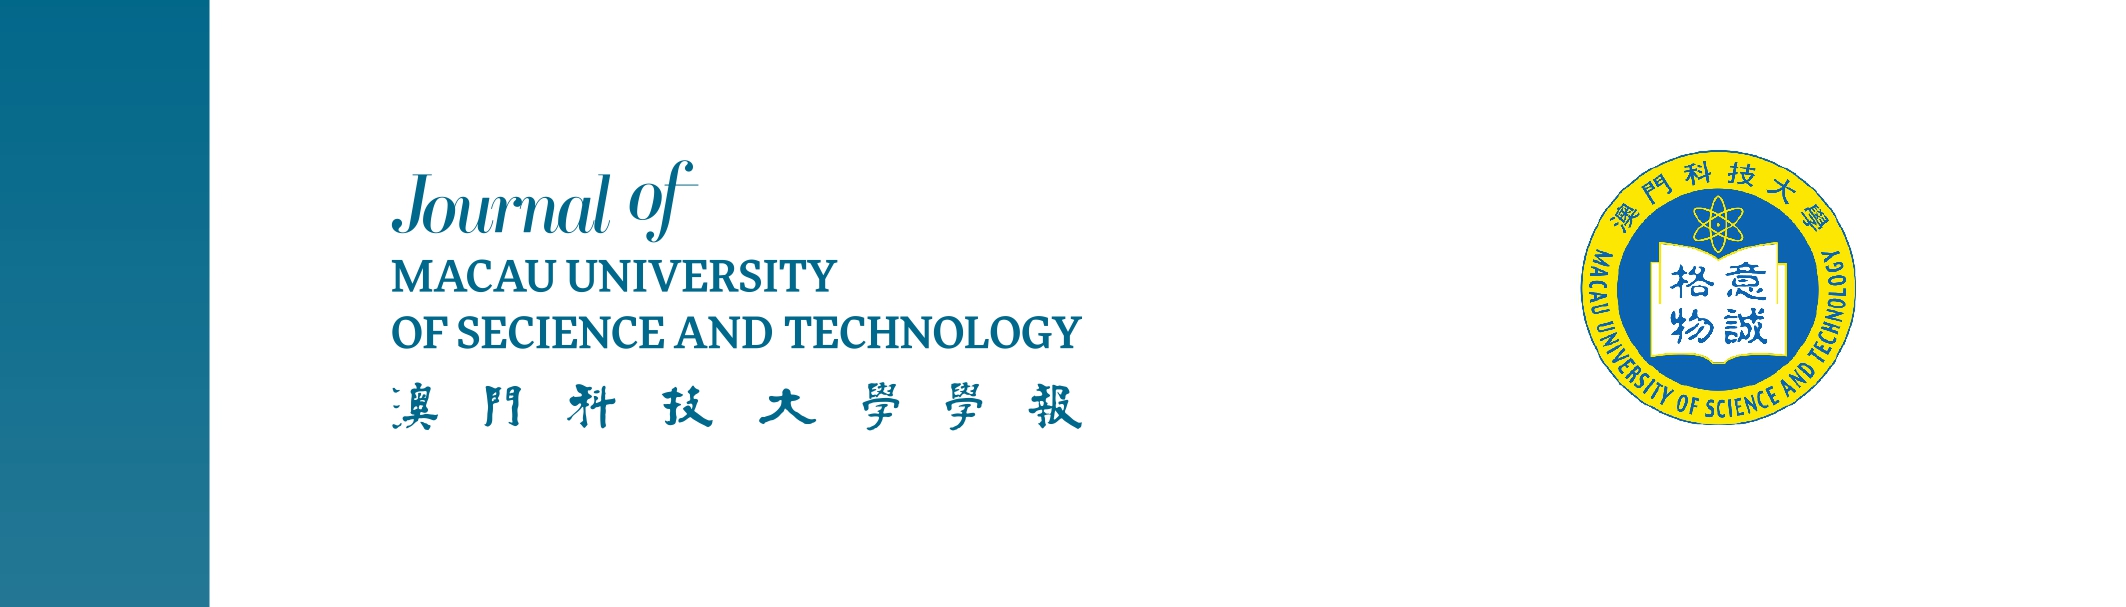 澳科大學報logo page 0001